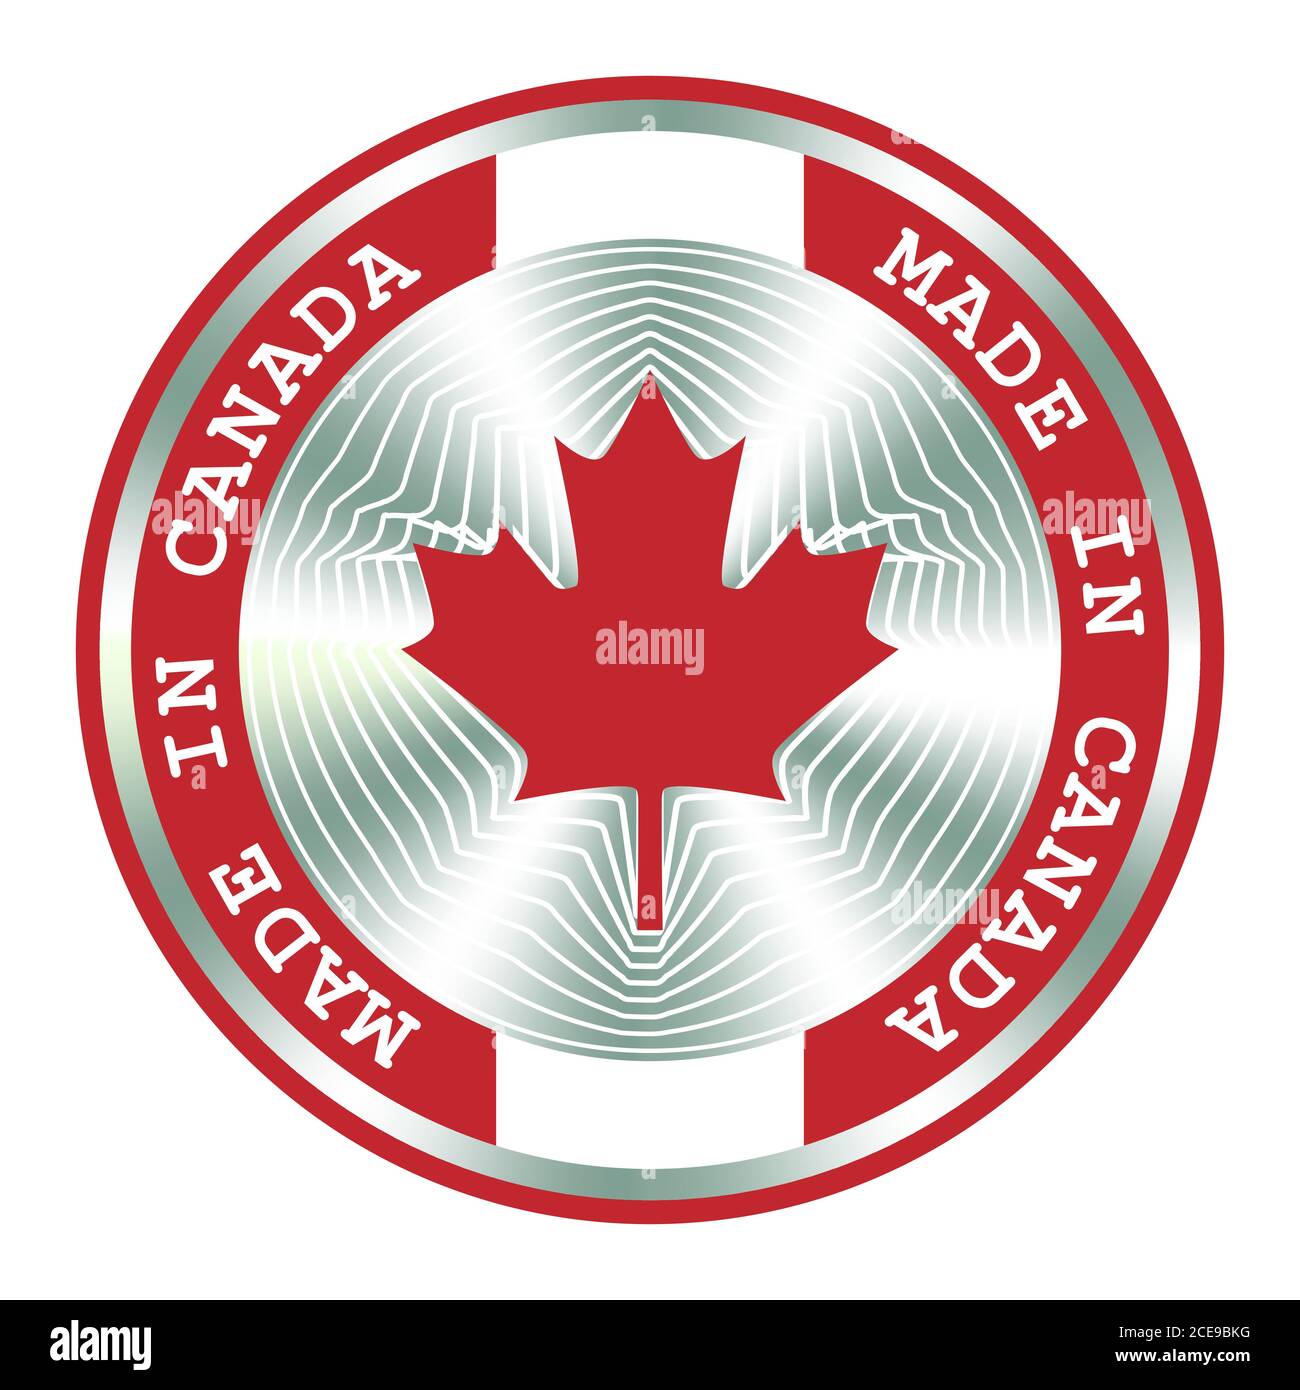 Fabriqué au Canada signe de production local, autocollant, sceau, timbre. Enseigne hologramme ronde pour la conception d'étiquettes et la commercialisation nationale au Canada Illustration de Vecteur